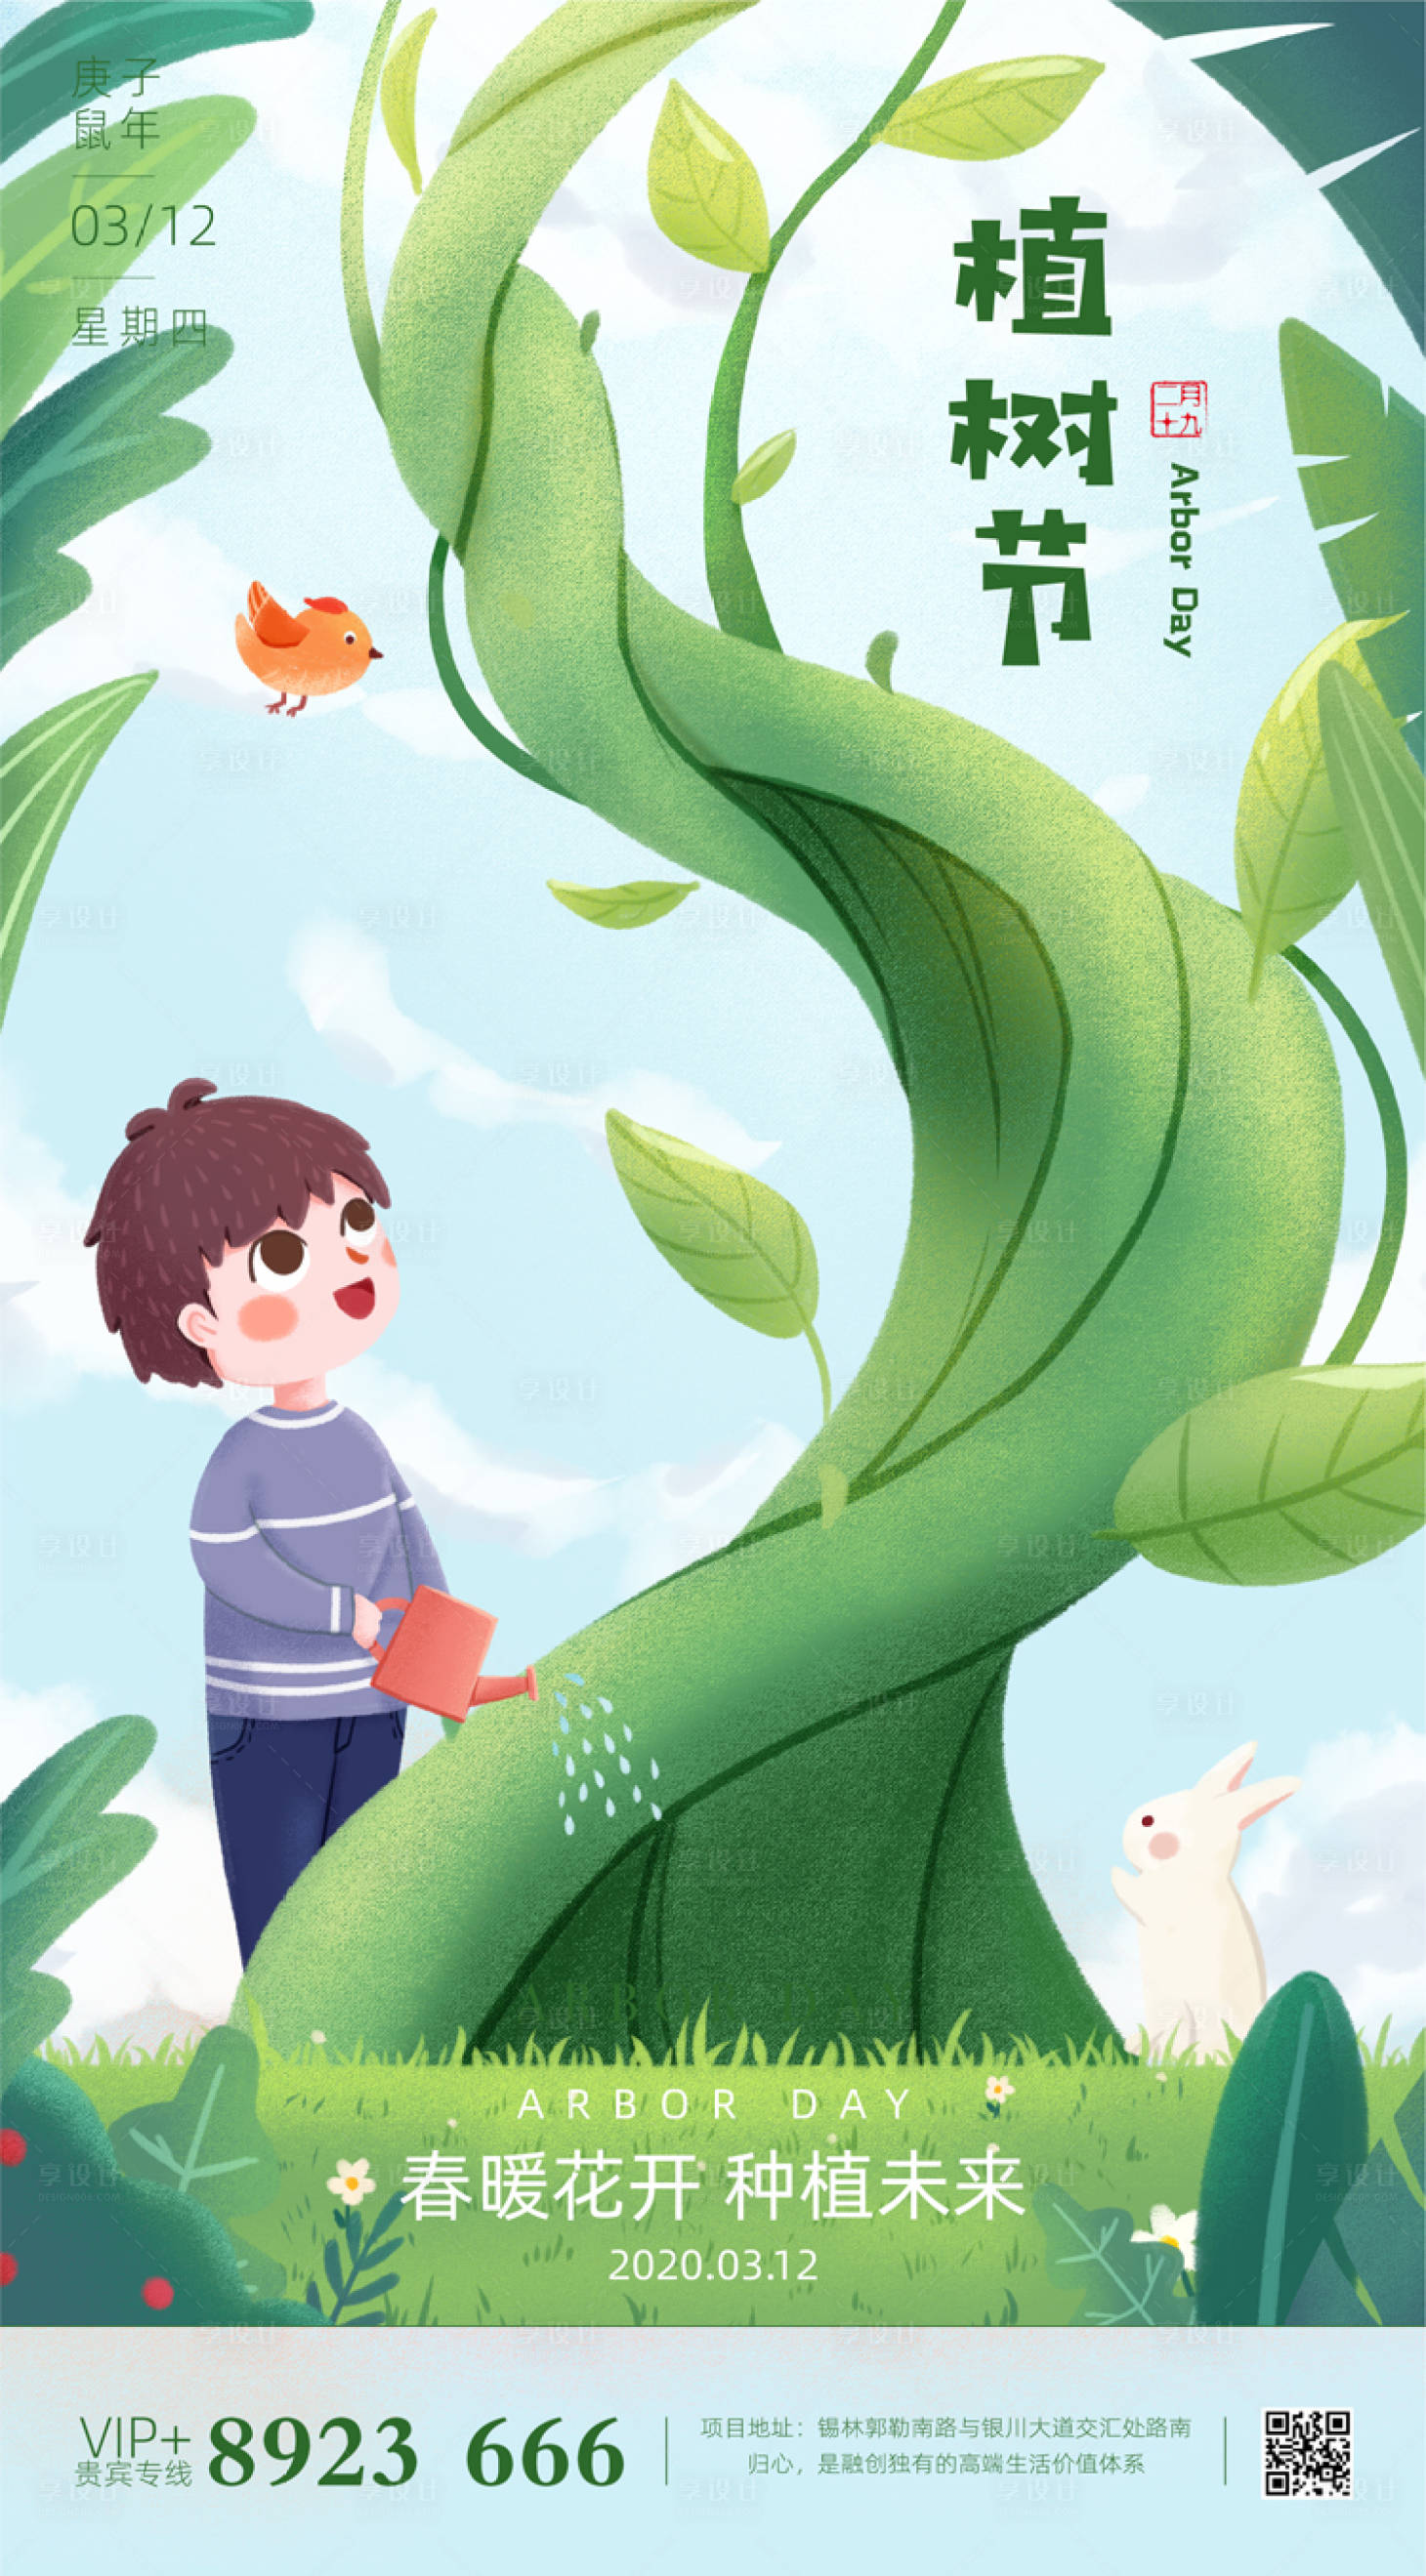 12创意手绘植树节海报绿色色ai广告设计作品素材-享